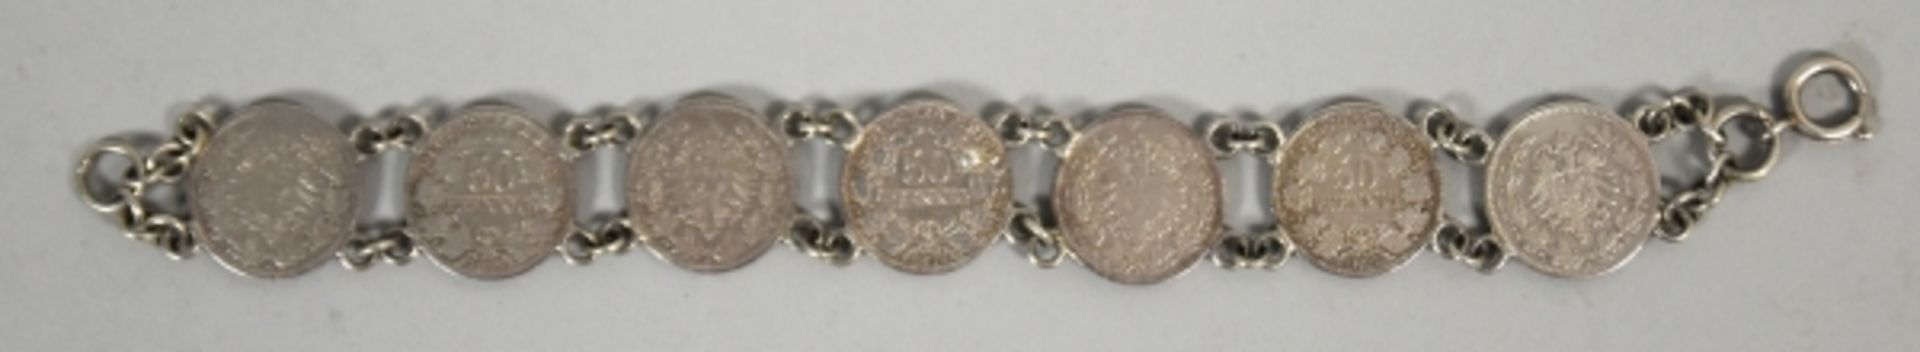 2 TEILE BURSCHENSCHAFT bestehend aus Armband mit 7 50-Pfennig Münzen u. farbiges Band mit Silber-